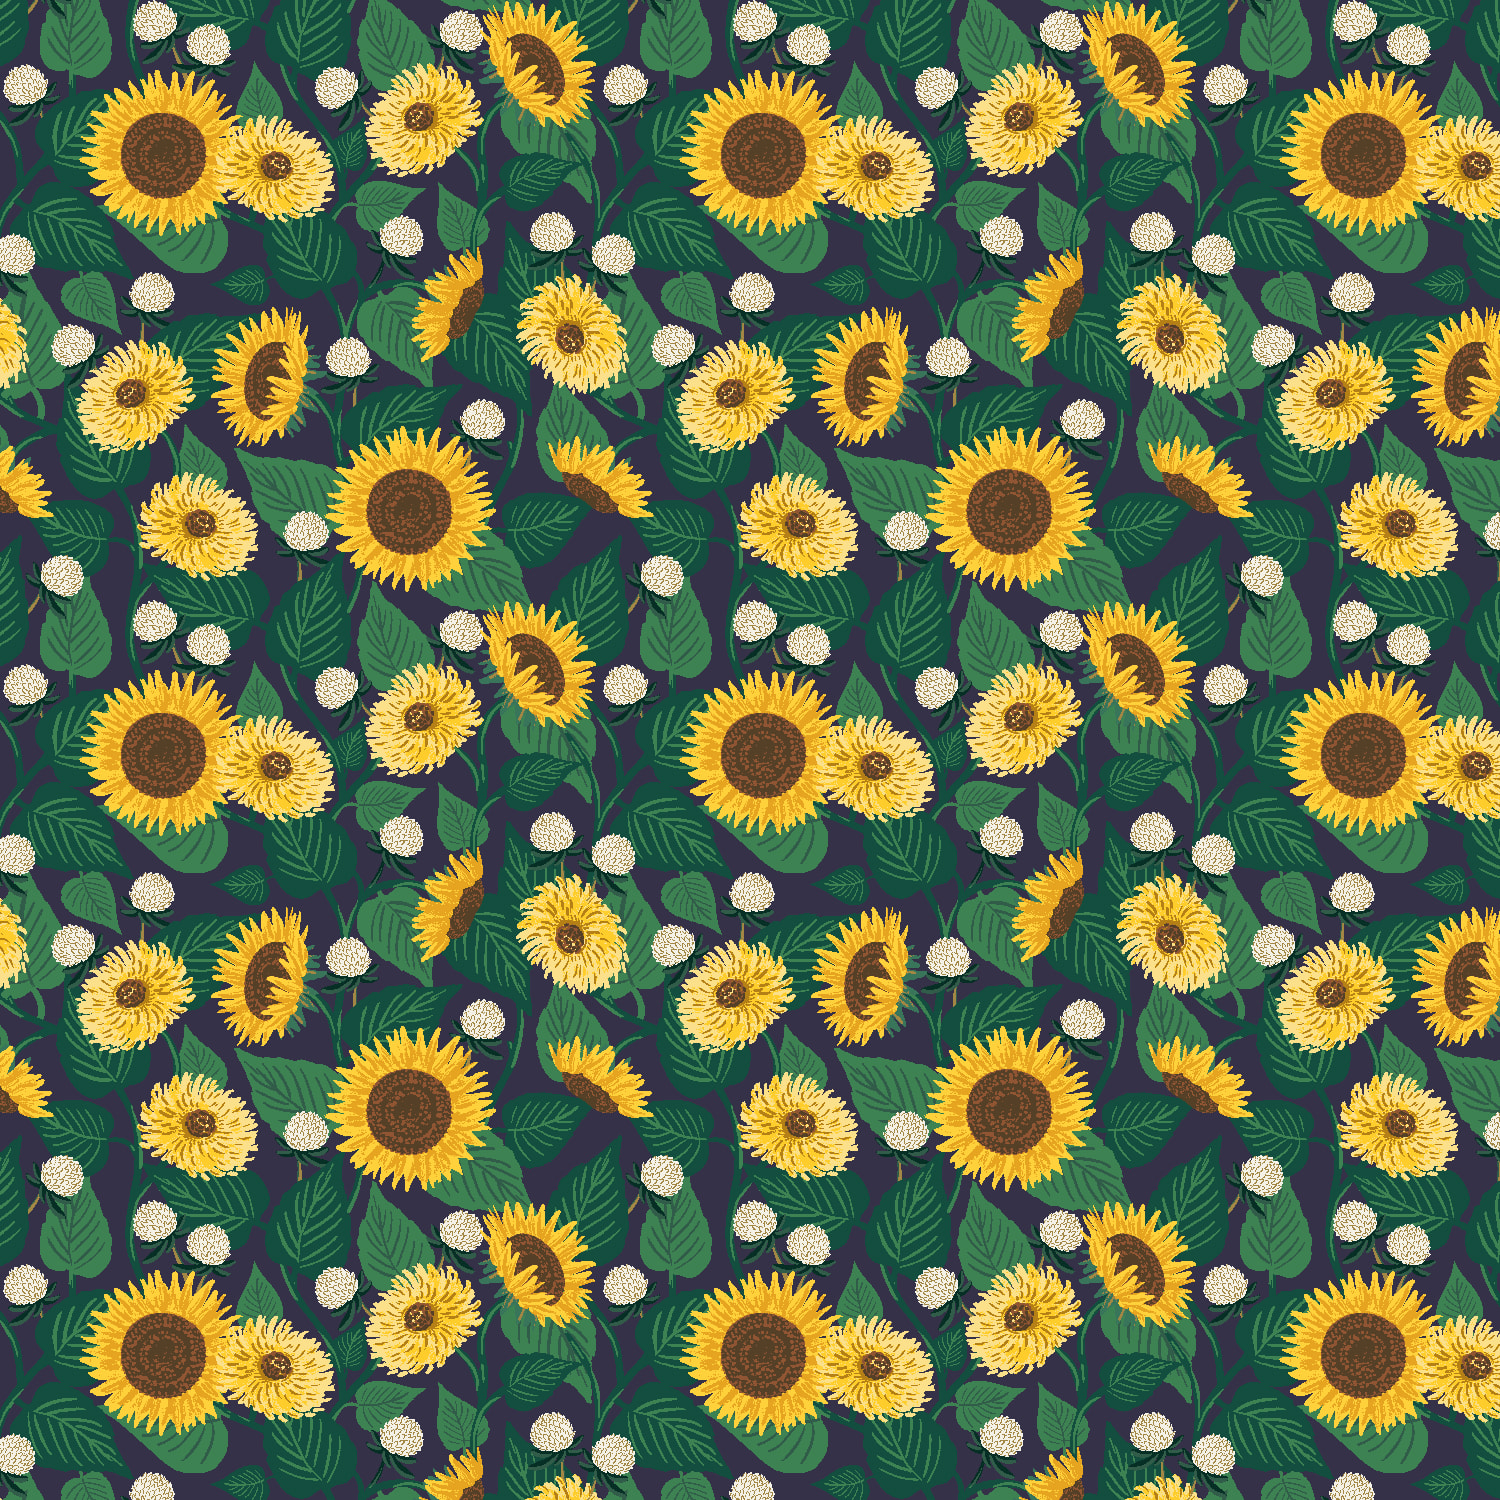 Sunflower Fields - Navy